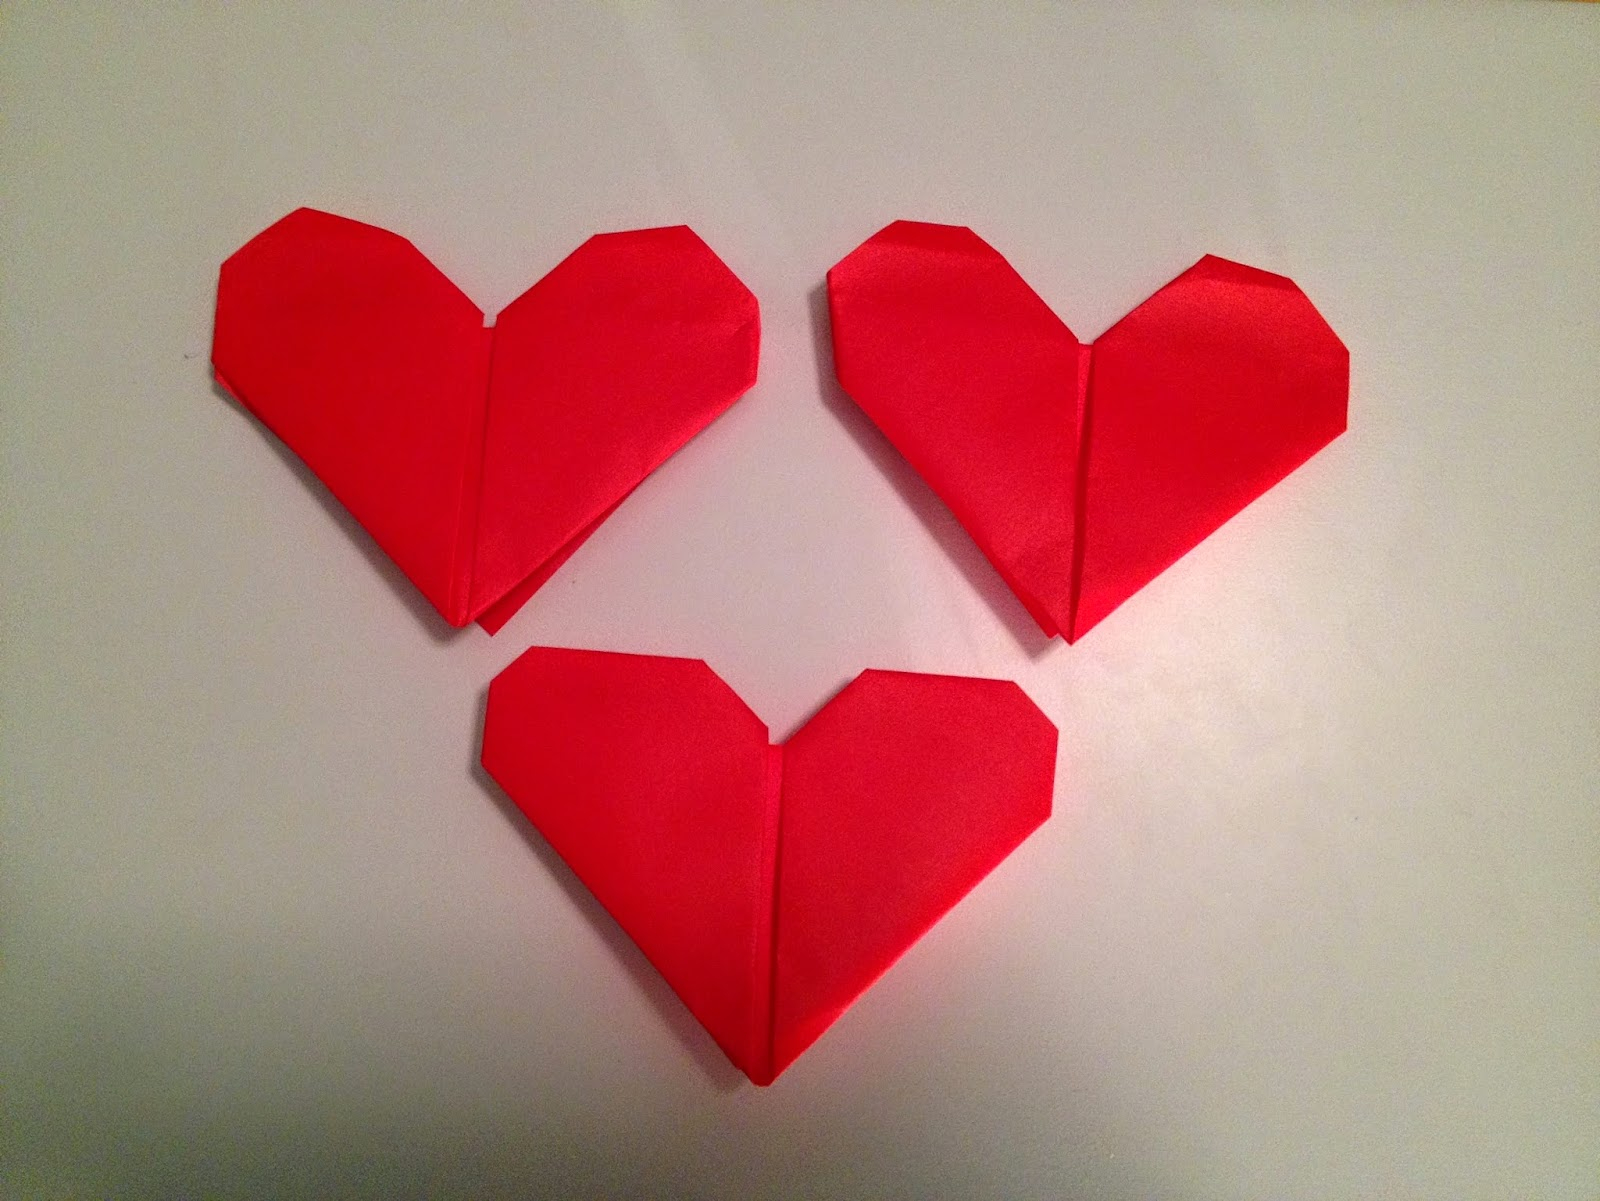 Easy Origami Heart Origami Heart Kids Origami Flower Easy